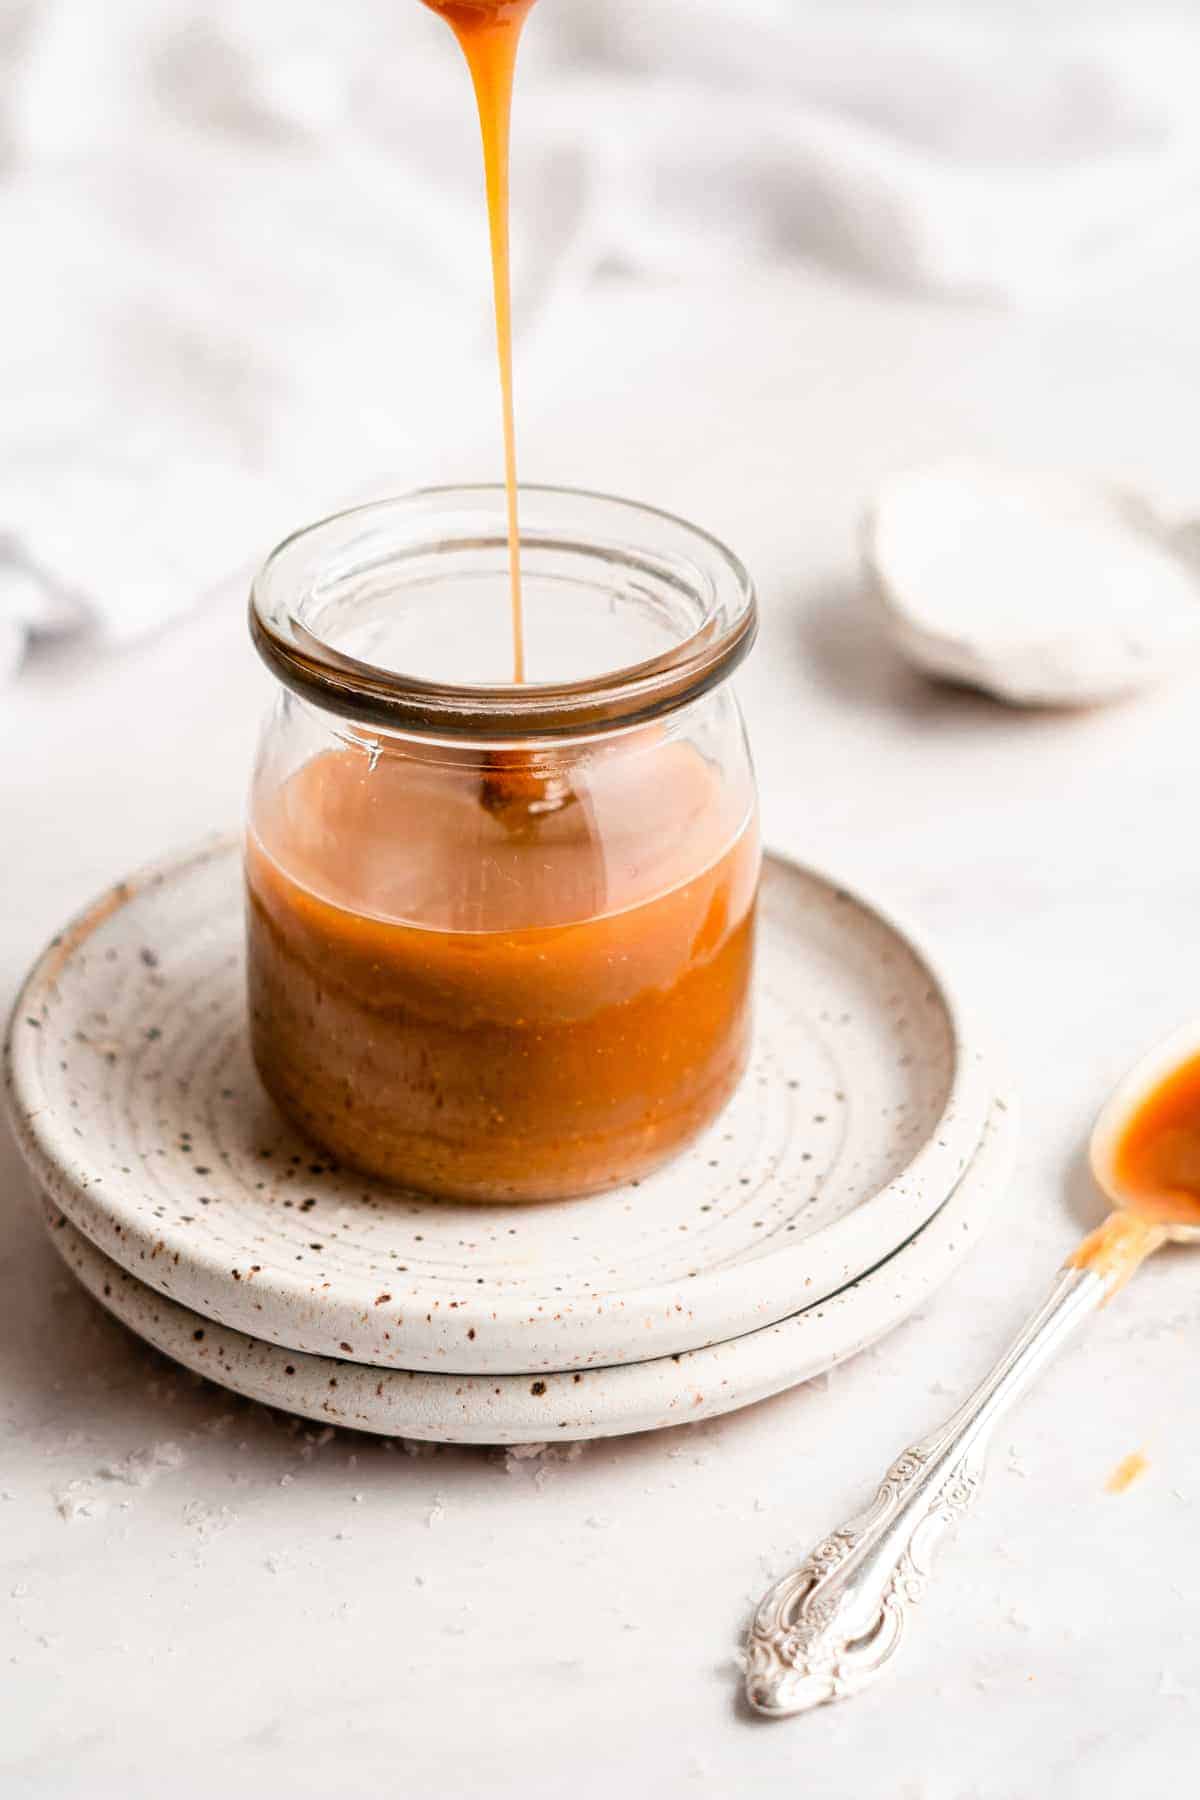 Caramel sauce drizzling into a jar.